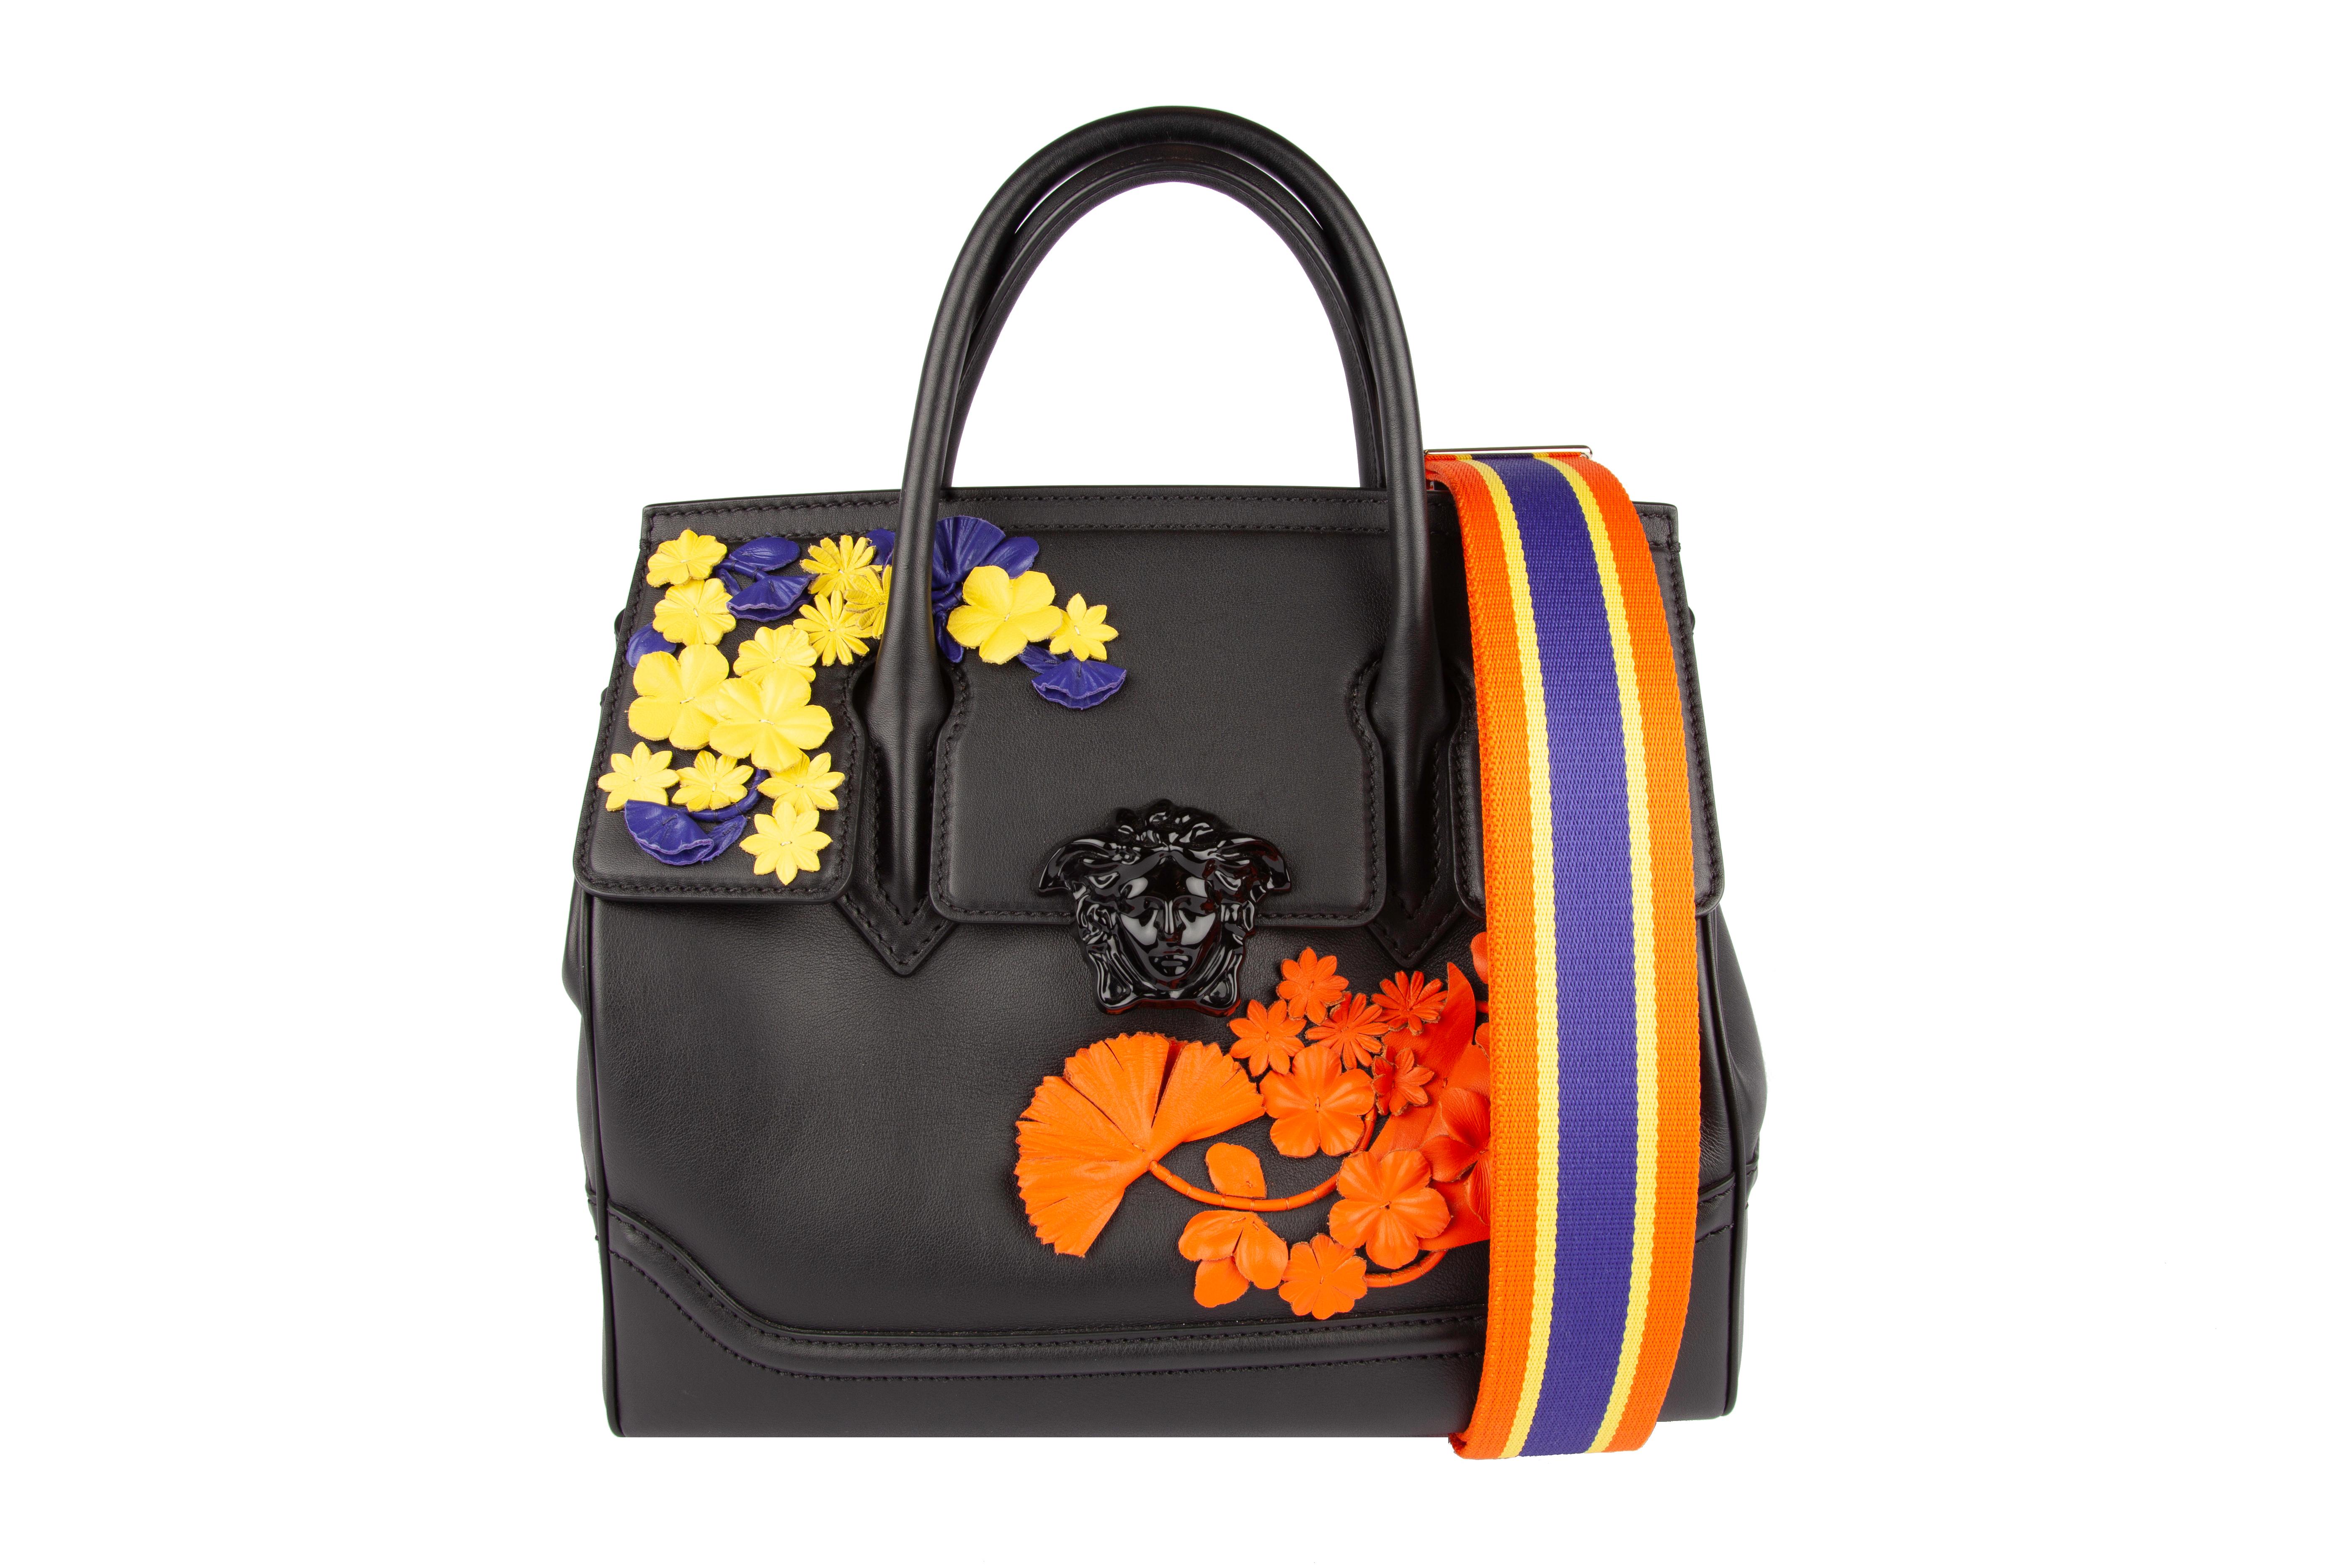 Black Versace Floral Medusa Leather Palazzo Empire Bag w/ 2 Detachable Shoulder Straps